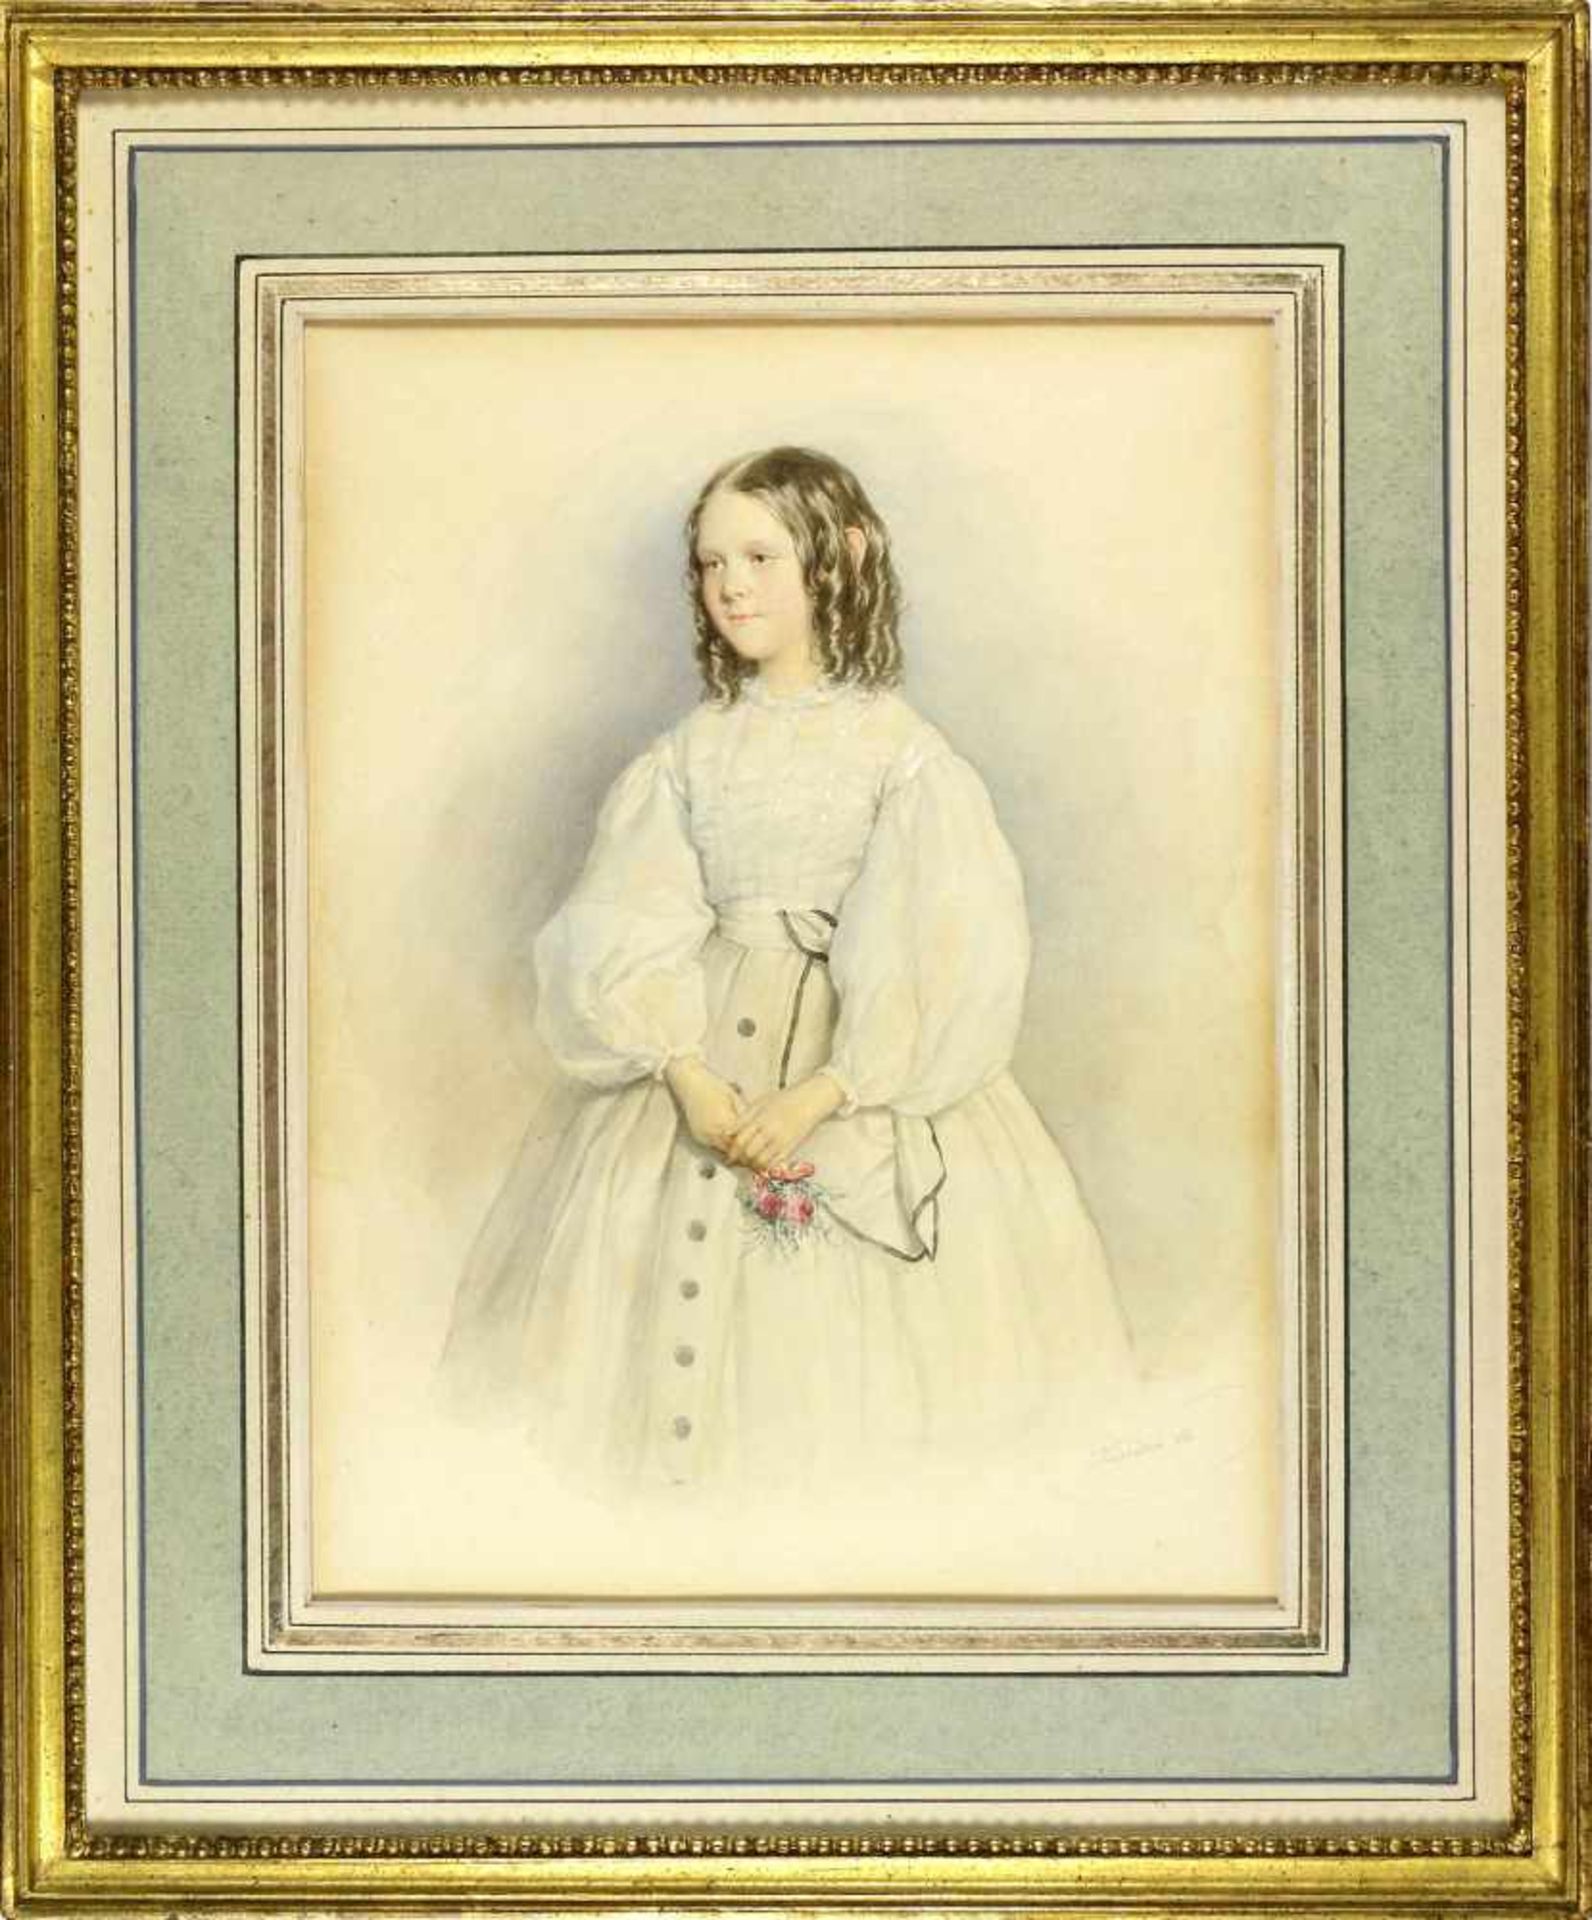 Kriehuber, Josef (1800 Wien - 1876 ebd.)Mädchen in weißem Kleid mit Rosenstrauß. 1863. Aquarell - Bild 2 aus 2